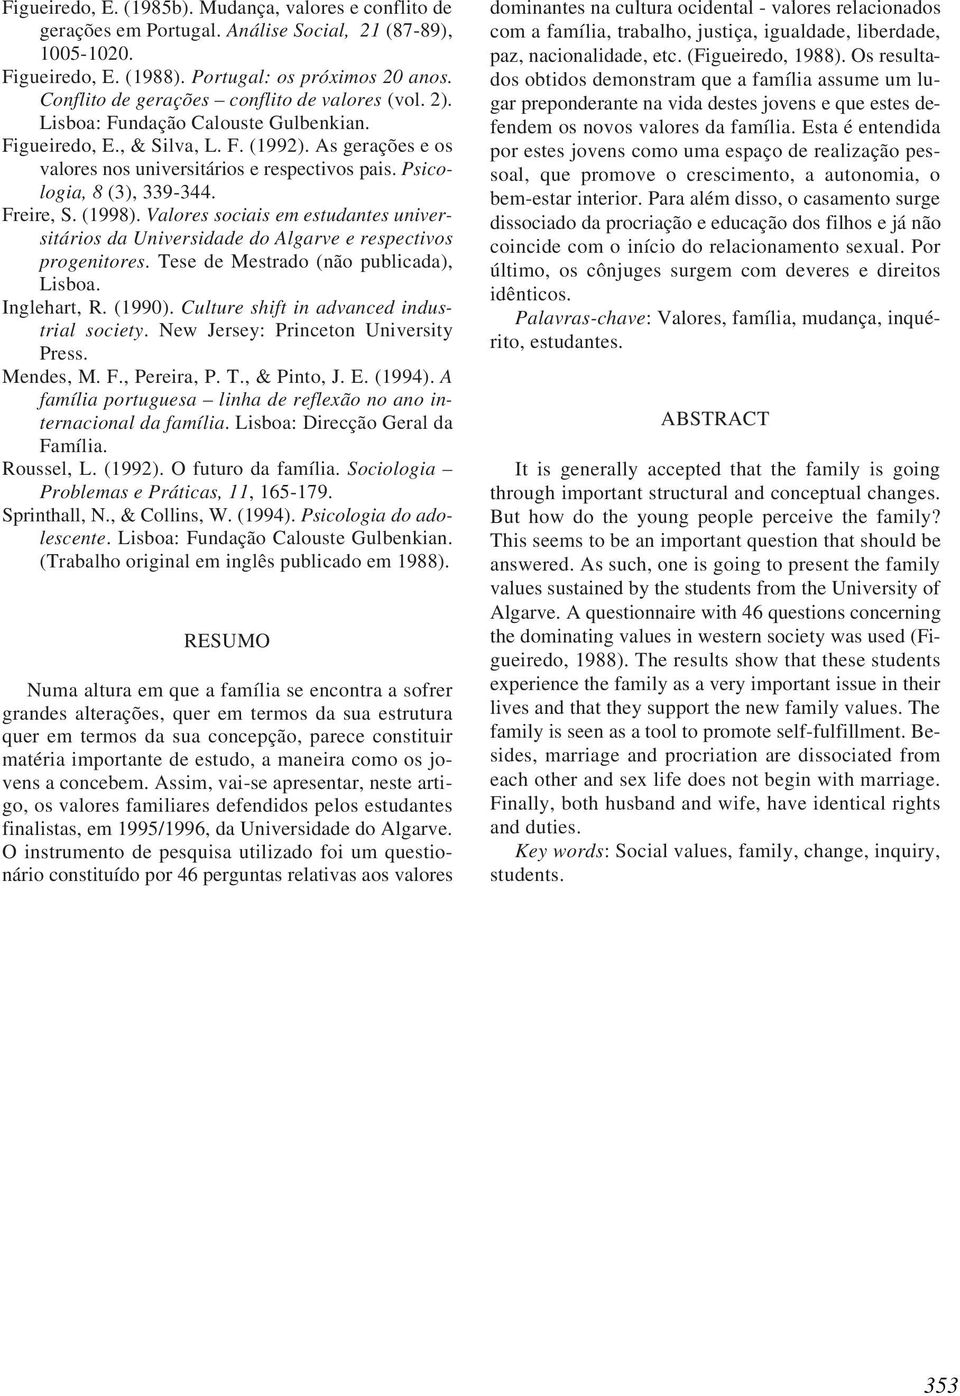 Psicologia, 8 (3), 339-344. Freire, S. (1998). Valores sociais em estudantes universitários da Universidade do Algarve e respectivos progenitores. Tese de Mestrado (não publicada), Lisboa.